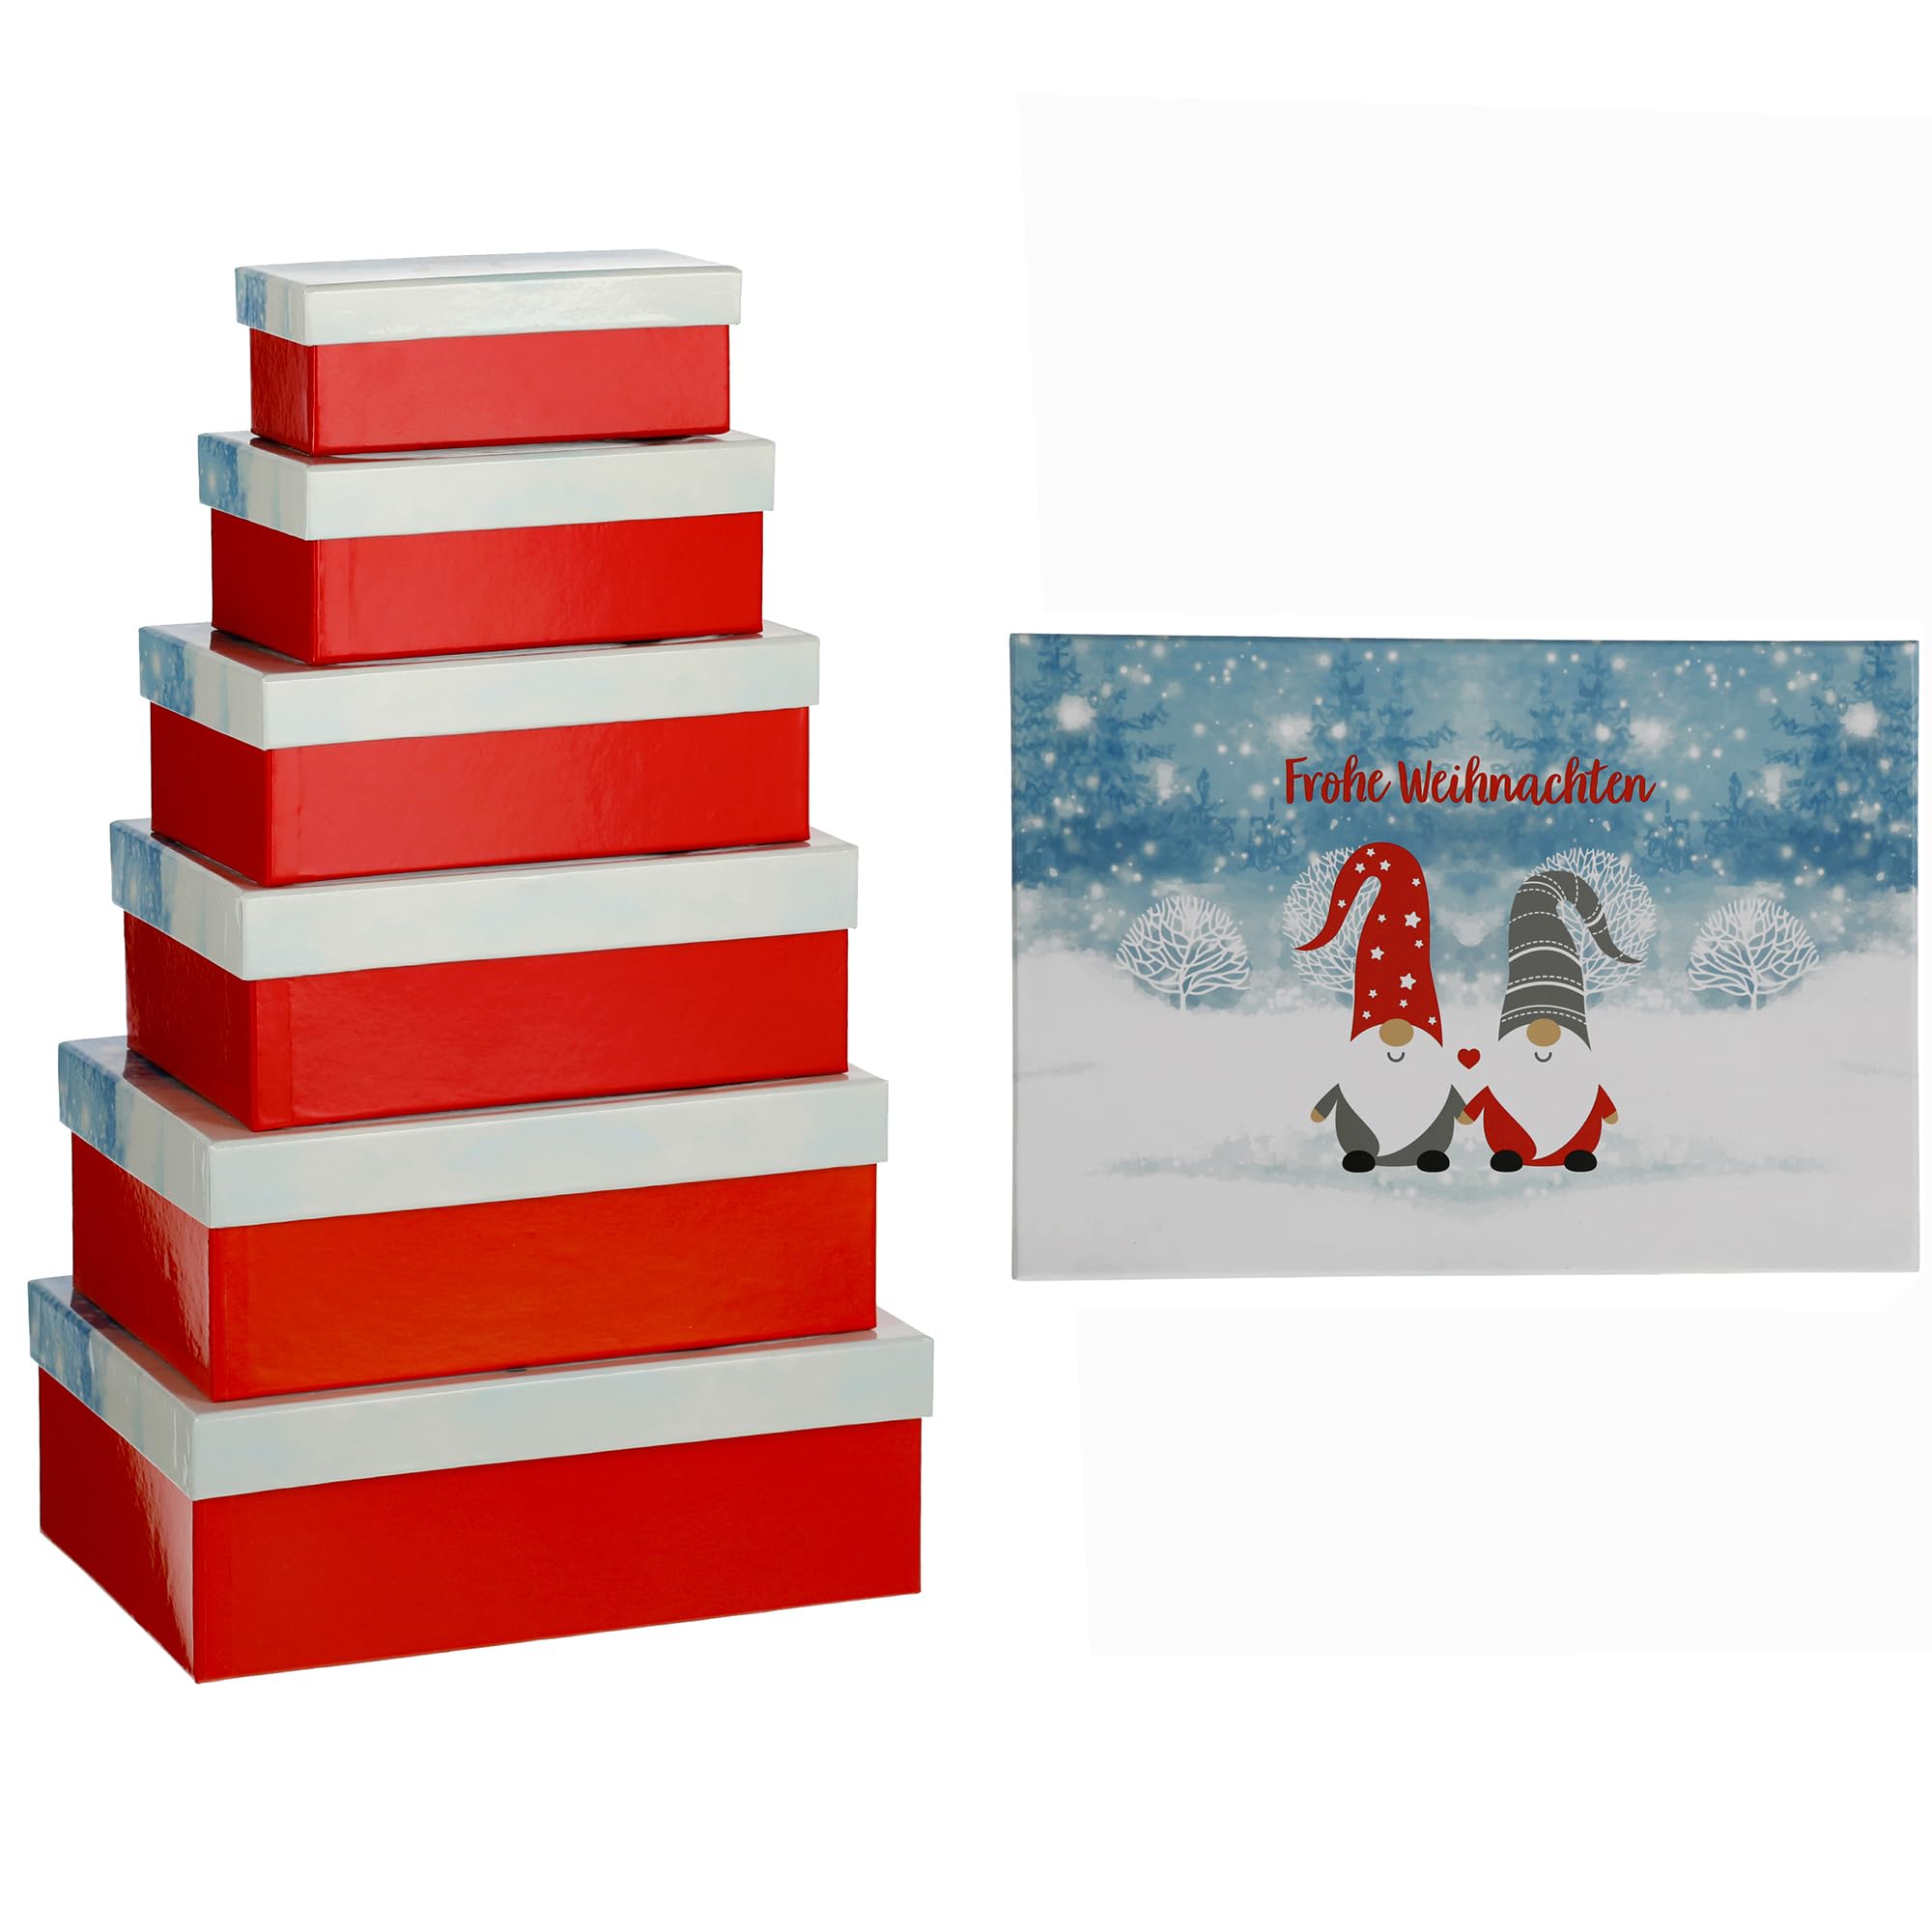 6-teiliges Set Geschenkboxen aus Pappe für Weihnachten - Geschenkkarton Weihnachten - Geschenkverpackung Weihnachten - Geschenkboxen mit Deckel für Weihnachten ("Frohe Weihnachten" Wichtel)